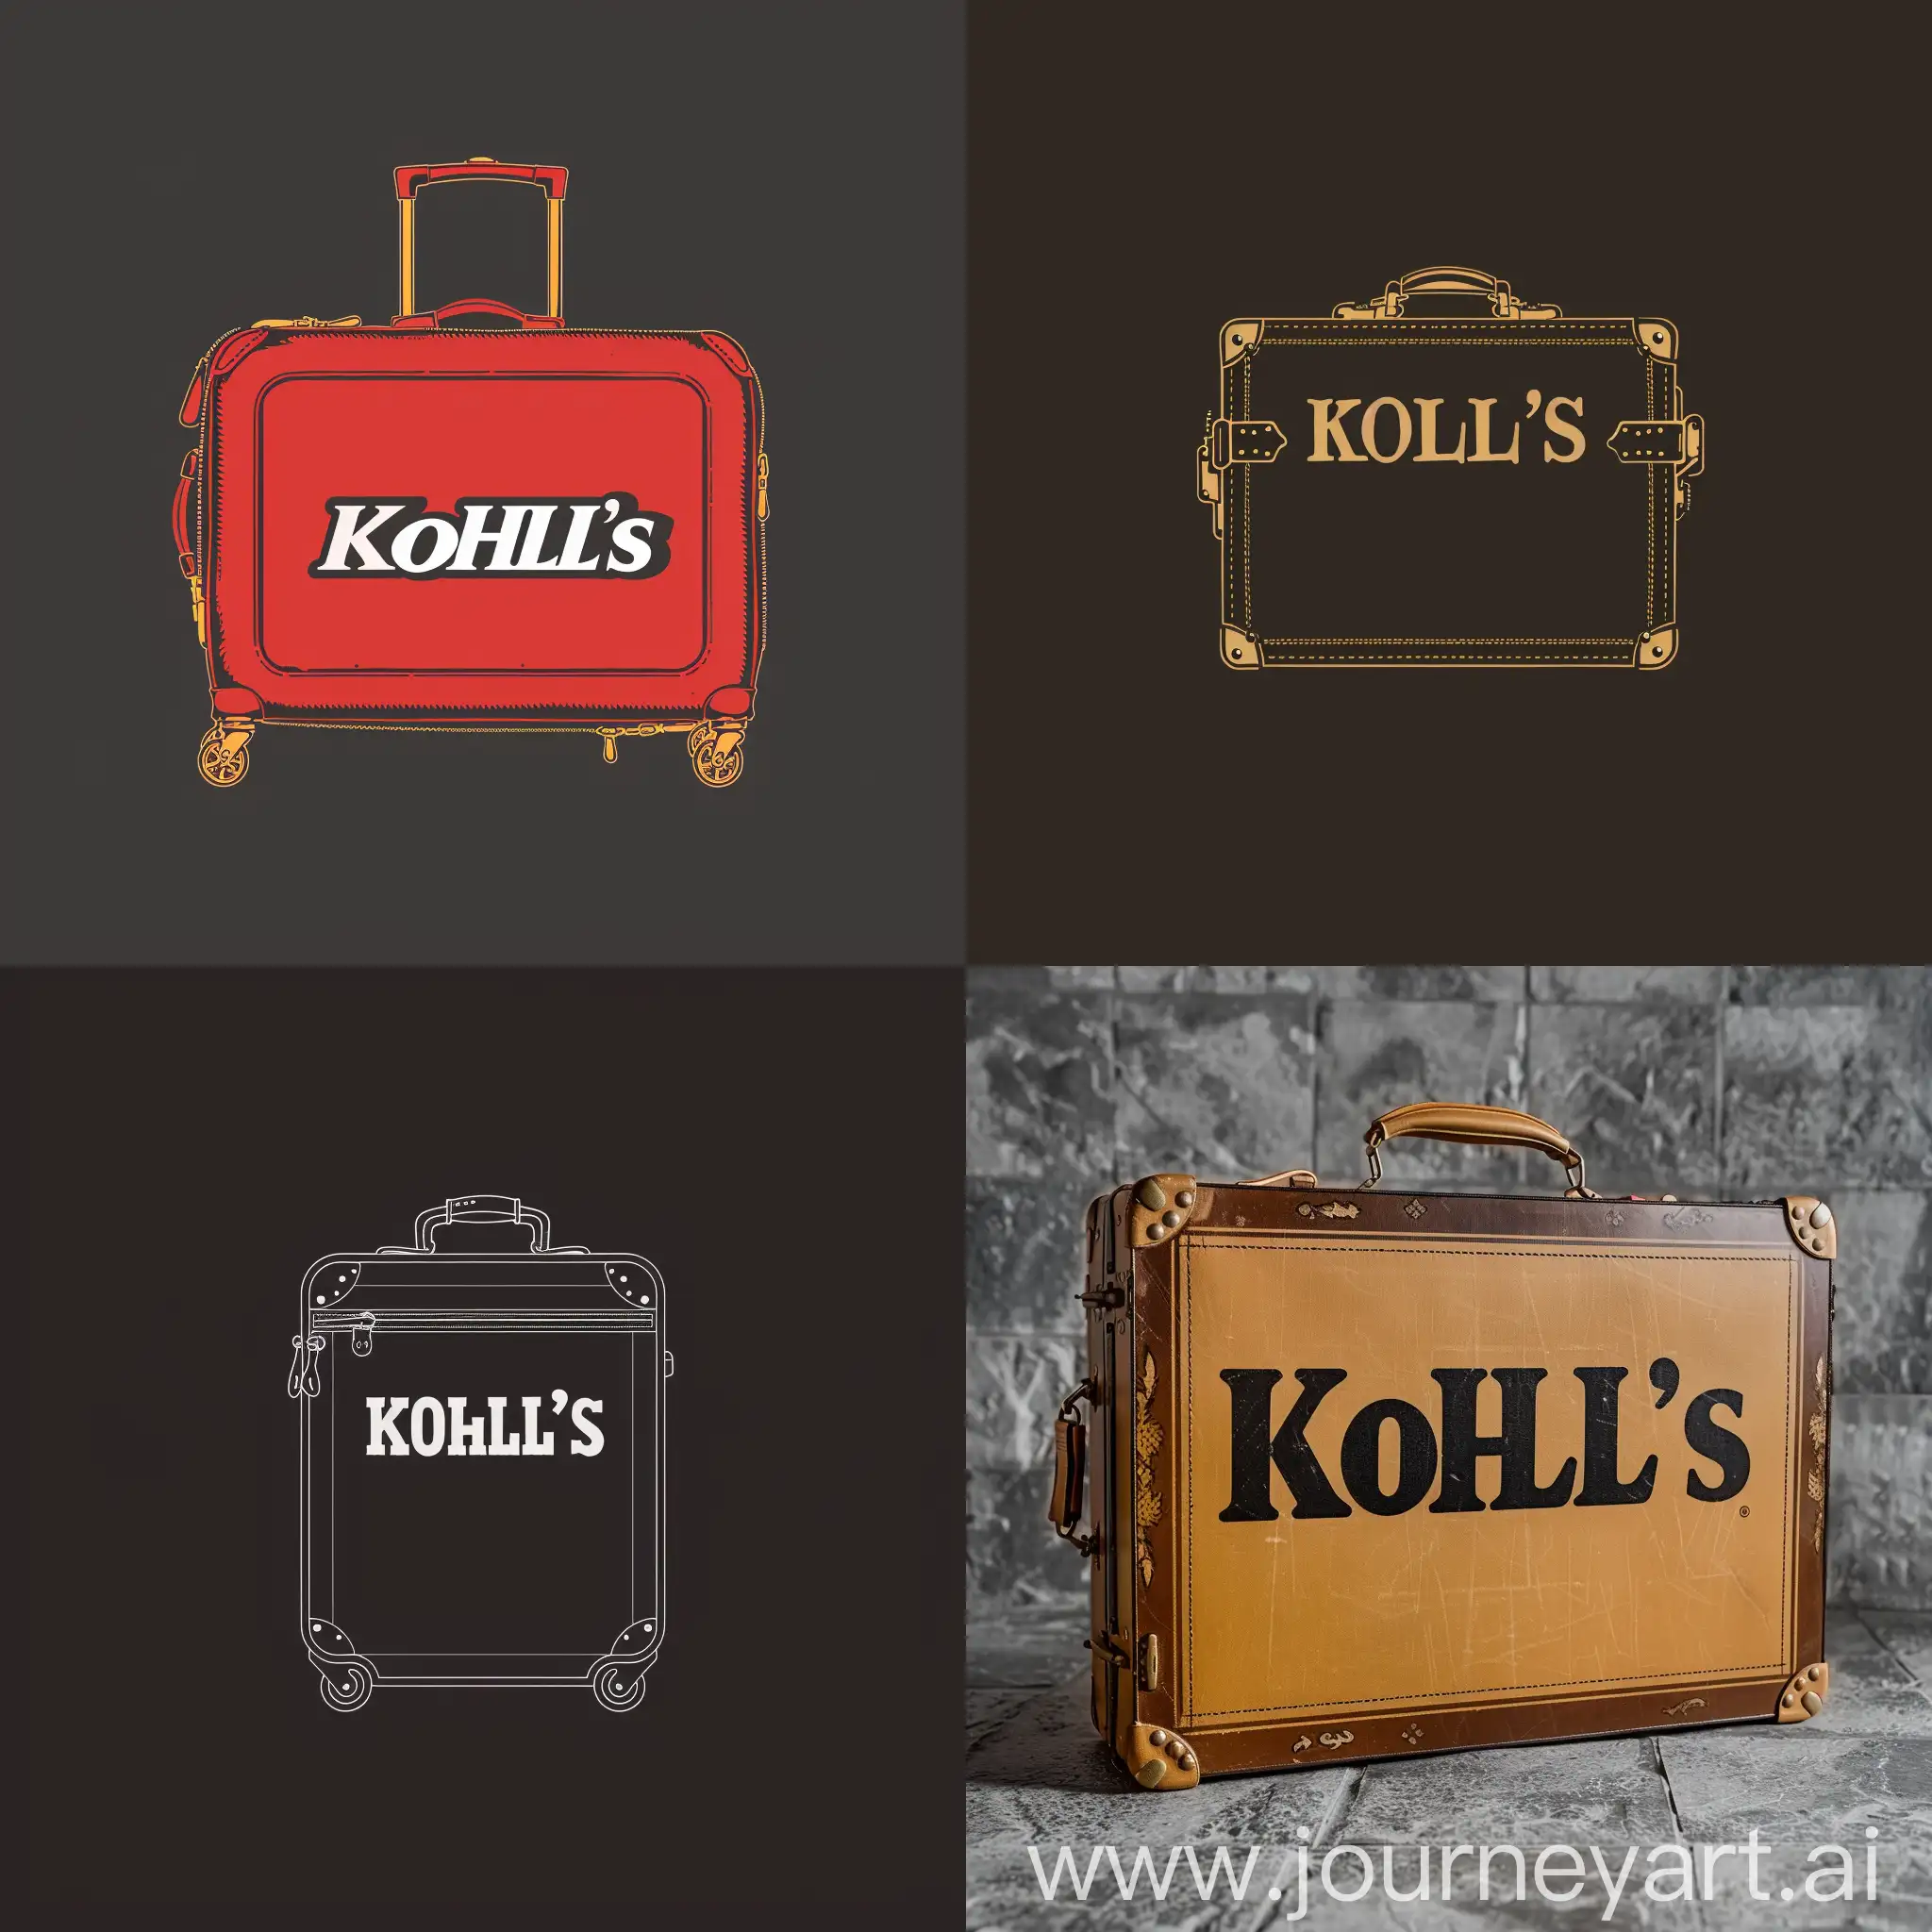 Kohls-Luggage-Elegant-Travel-Companion